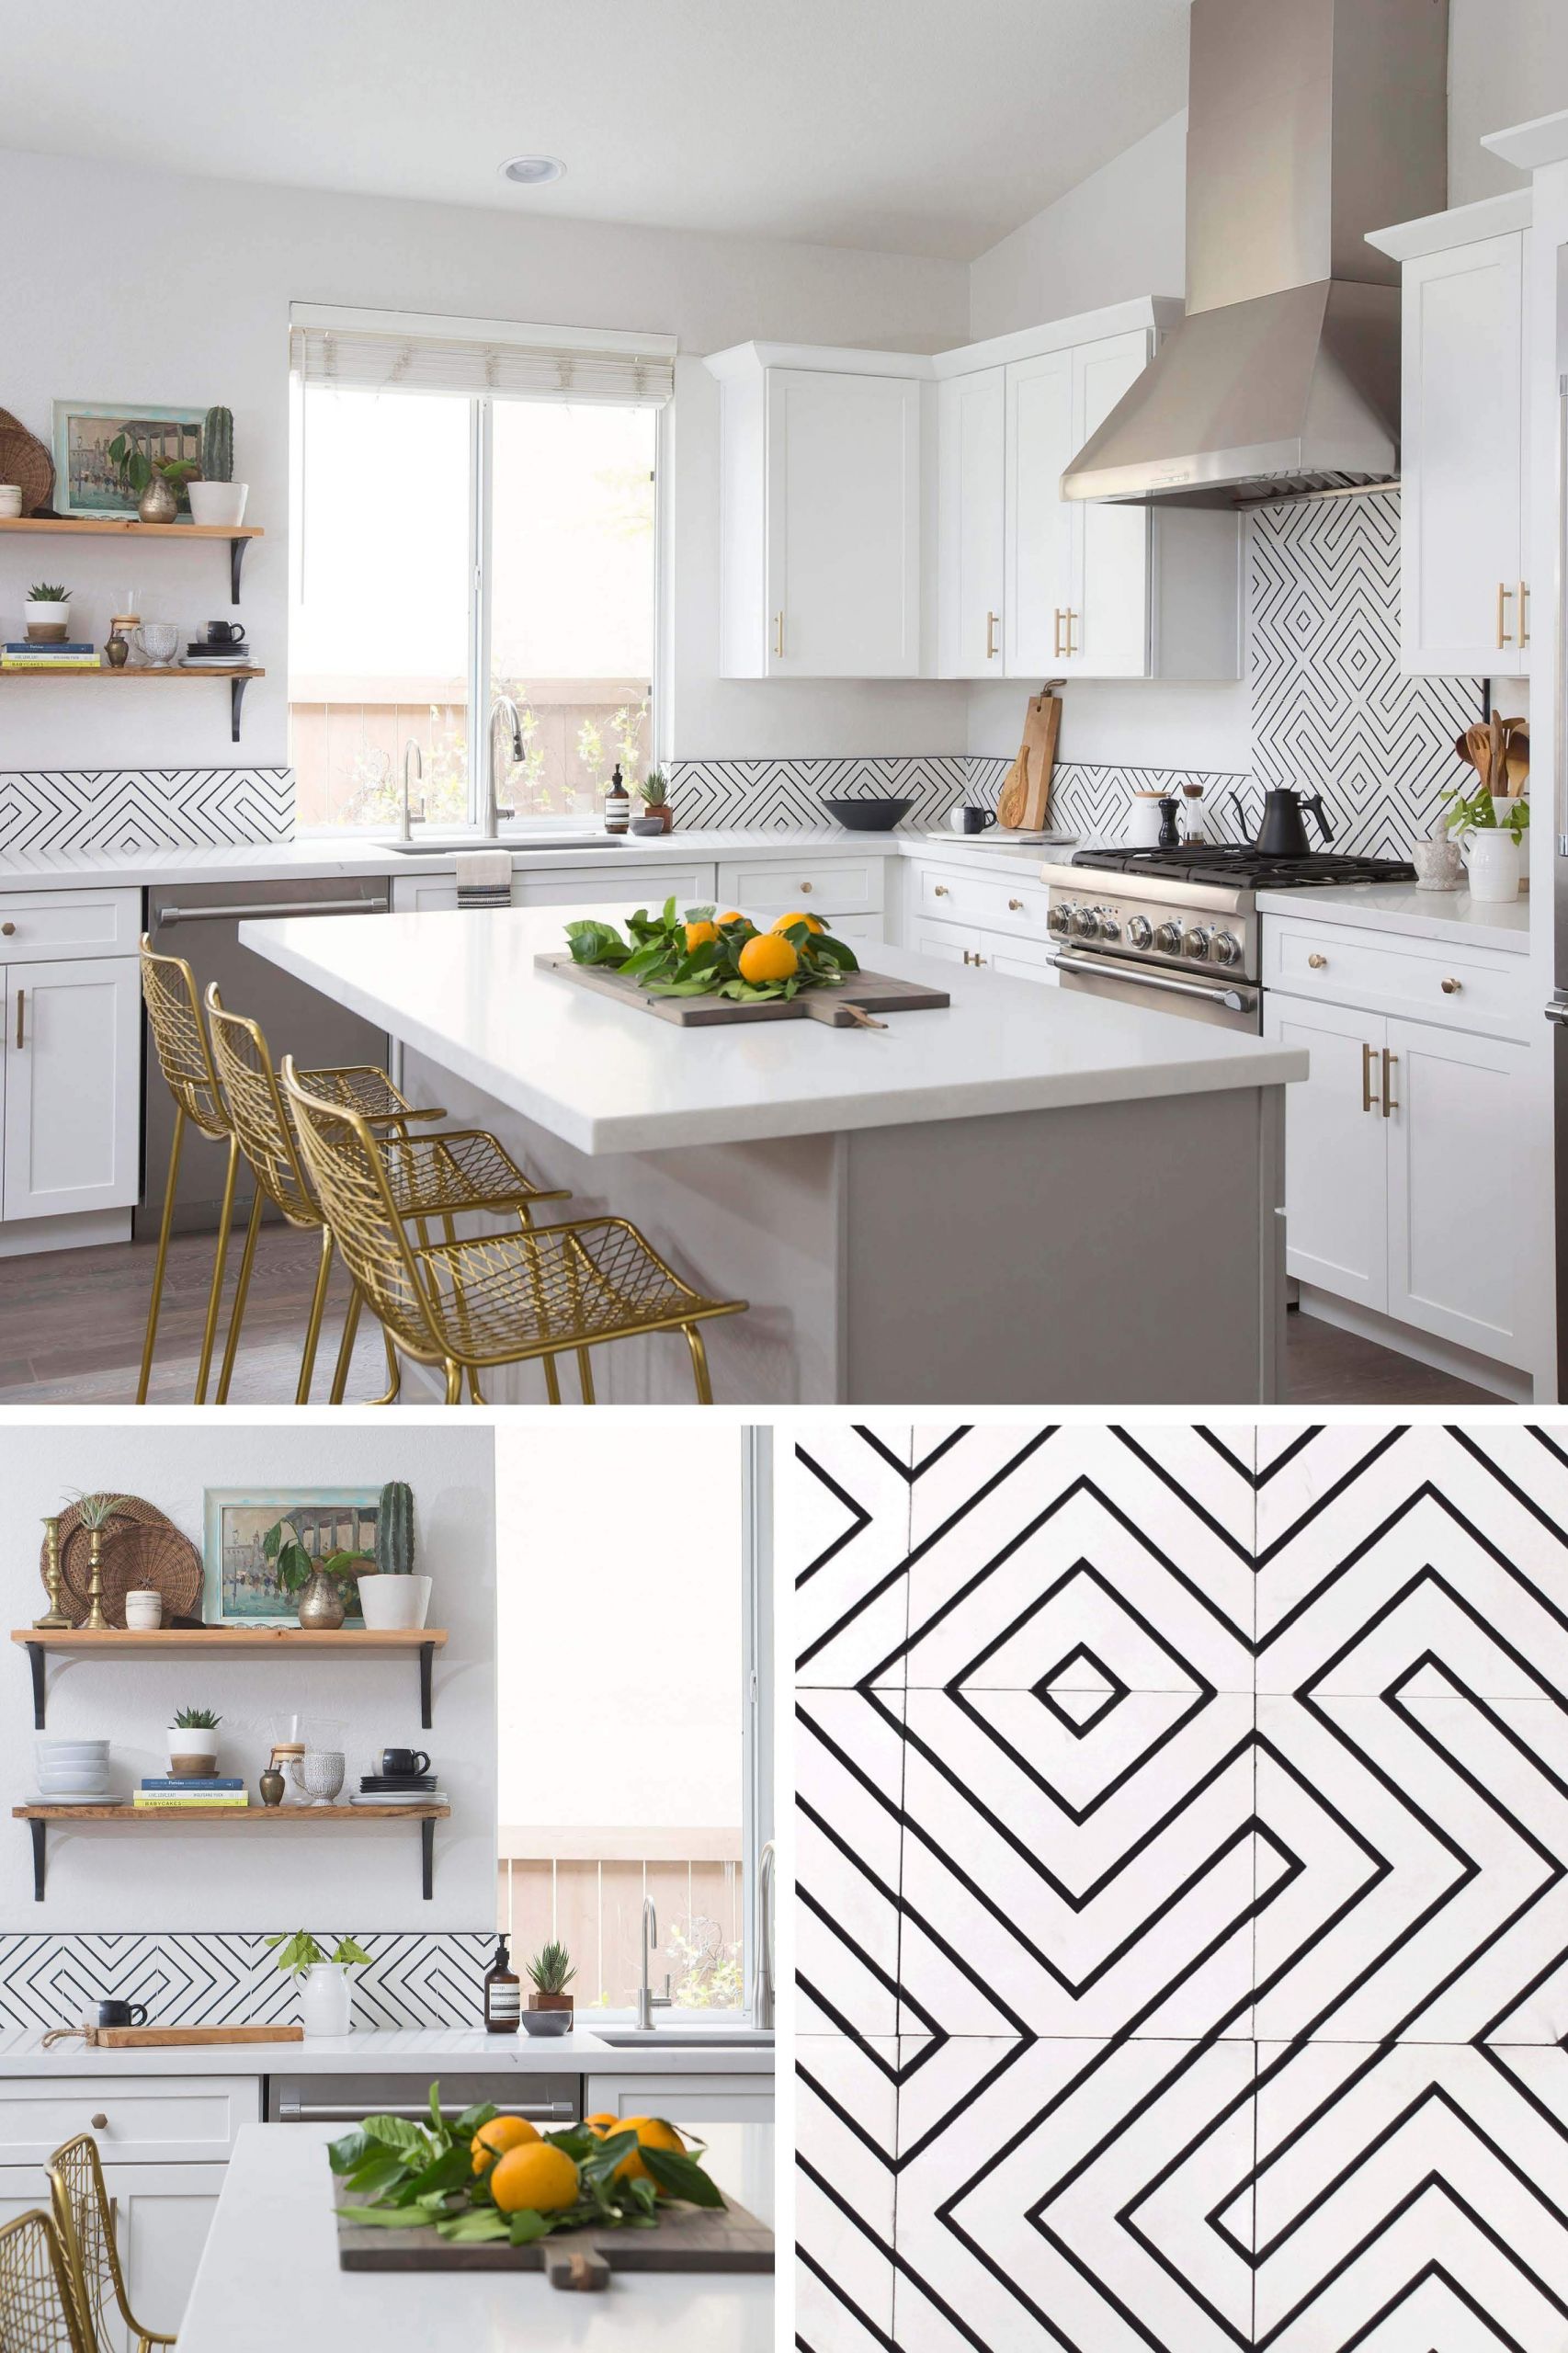 Kitchen Tiles Images
 kitchen reno encaustic cement tile backsplash steals the